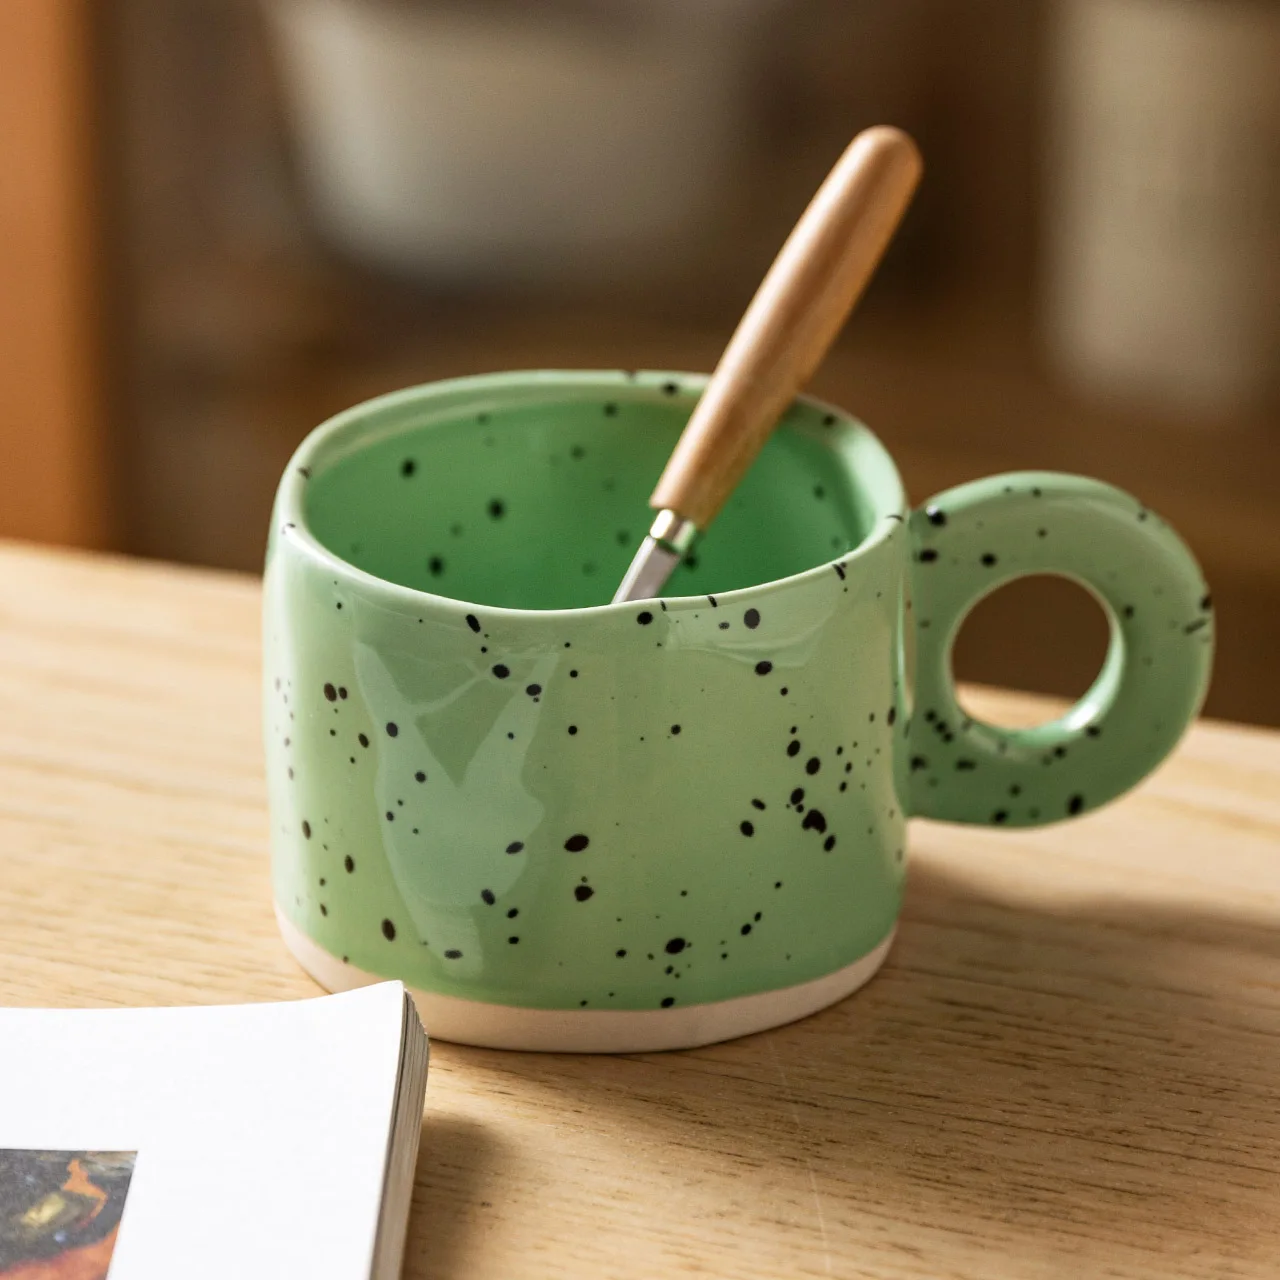 Jednostavne Modne Kava Mugs Za Doručak, Kreativno Prometna Bubalo U Japanskom Stilu, stakleno Keramička Elegantan Bubalo Koffie Kopjes, suđe za Kuhanje / DI50BZ